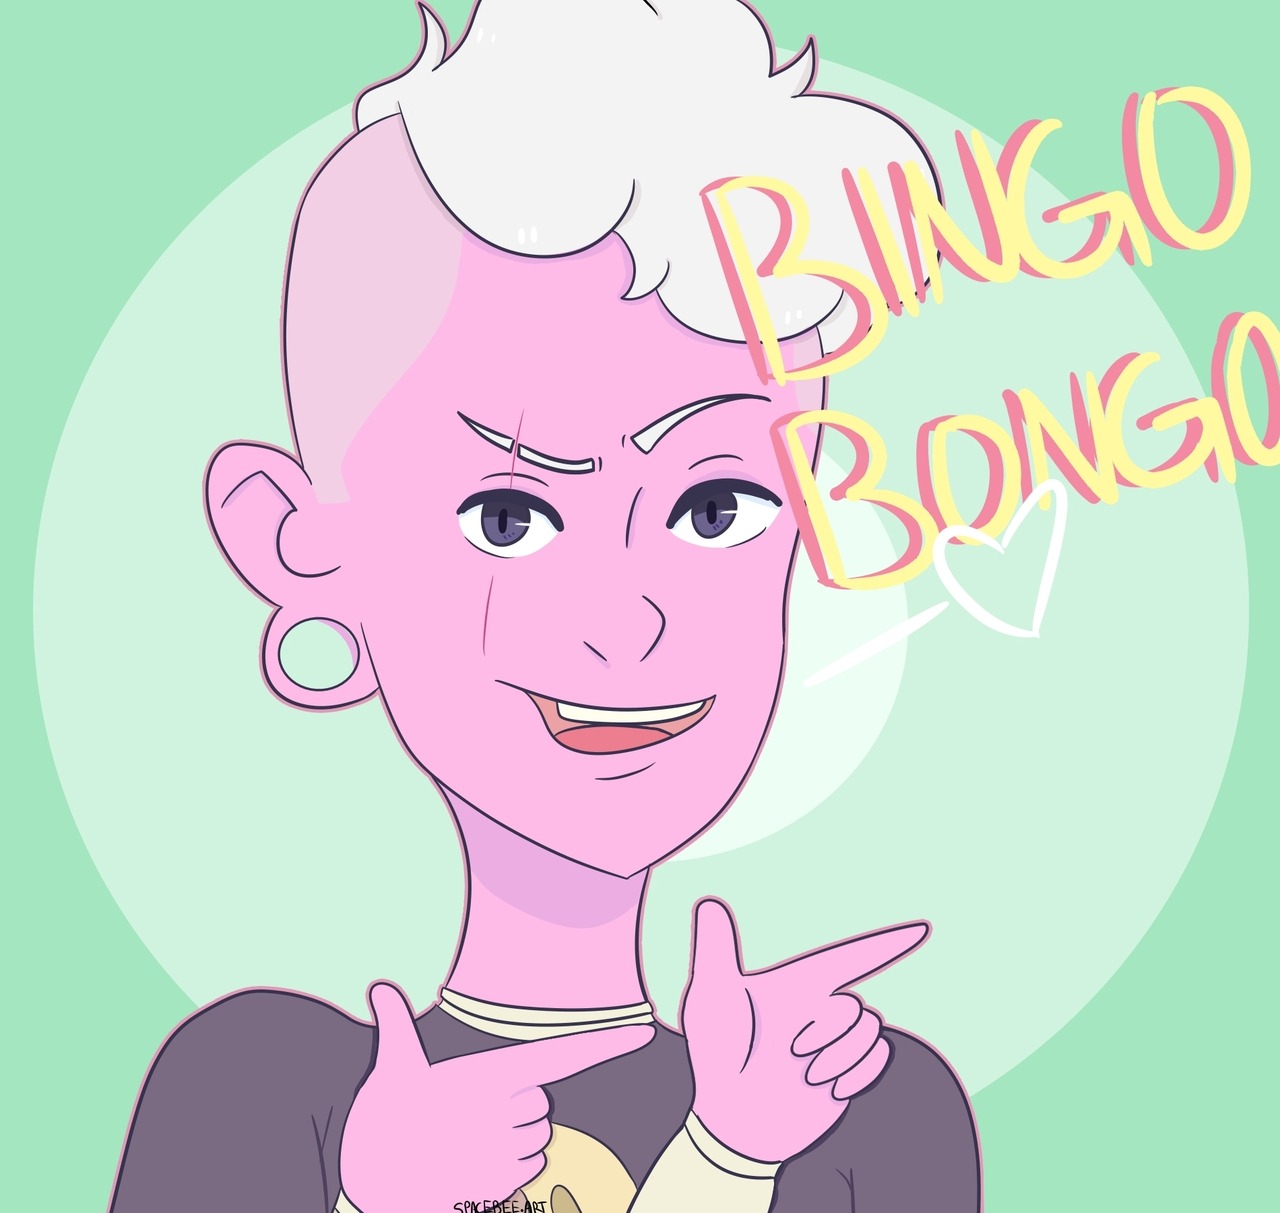 “Bingo bongo”